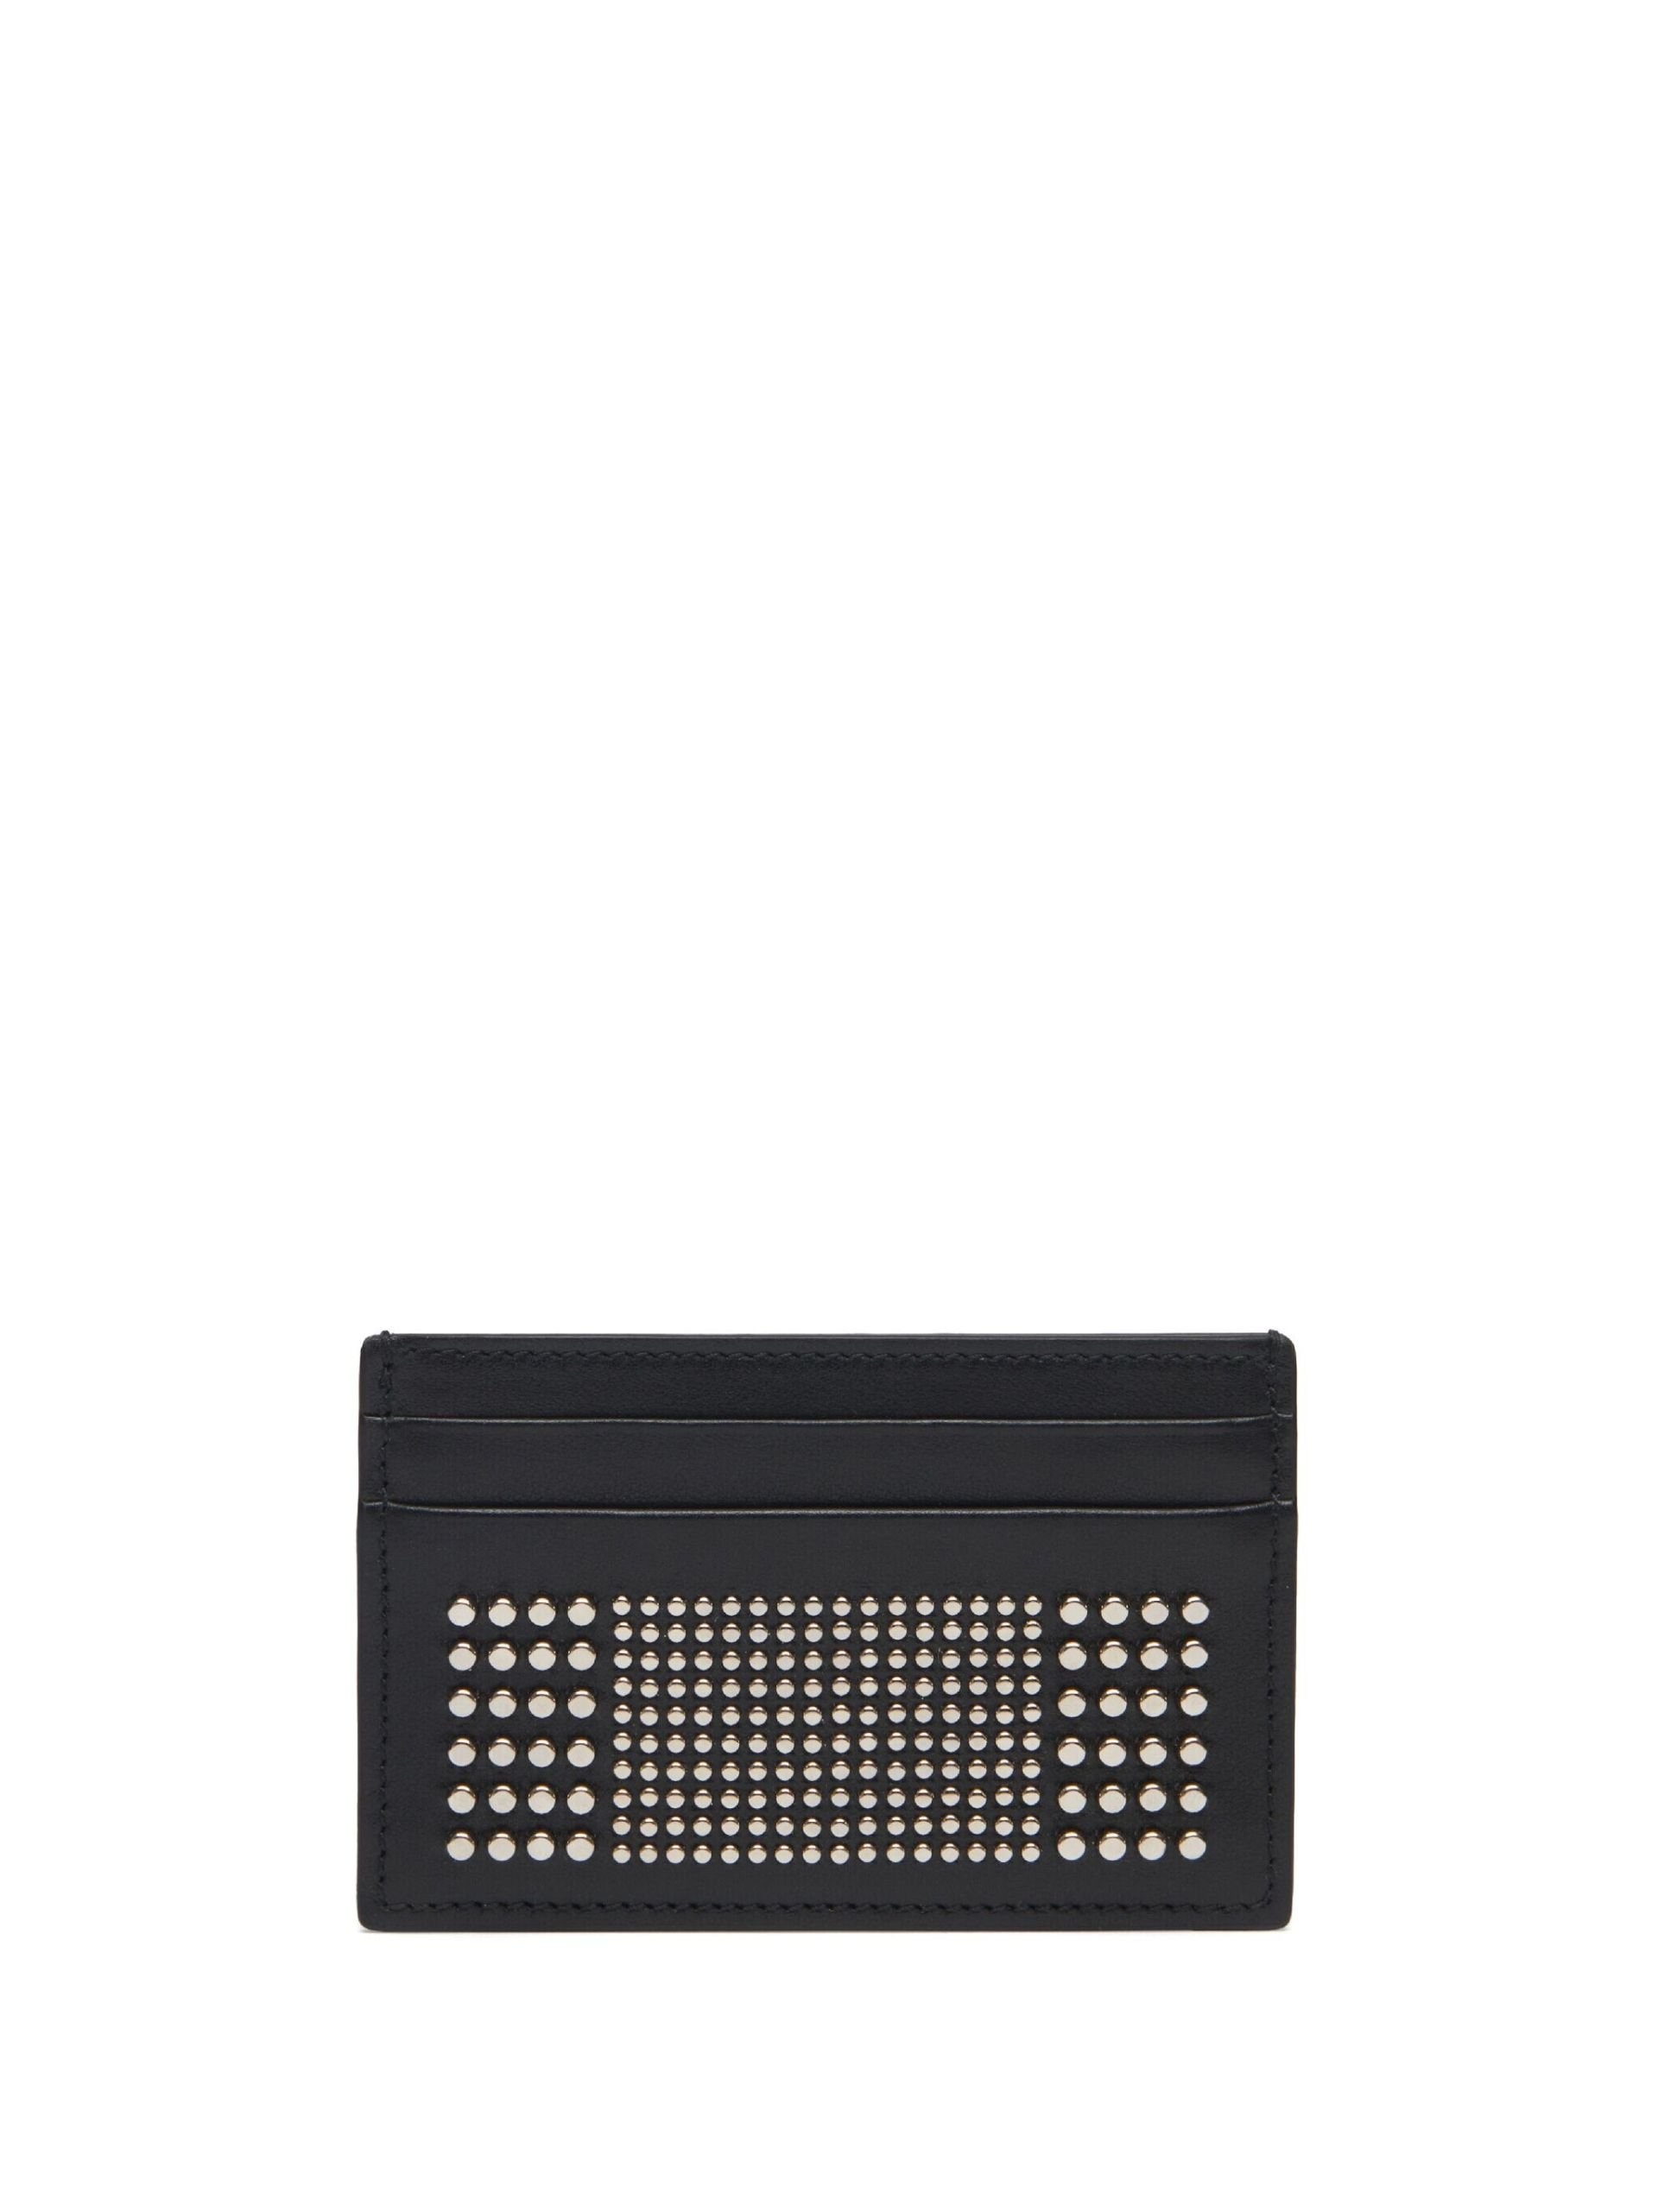 black studded leather card holder - 2